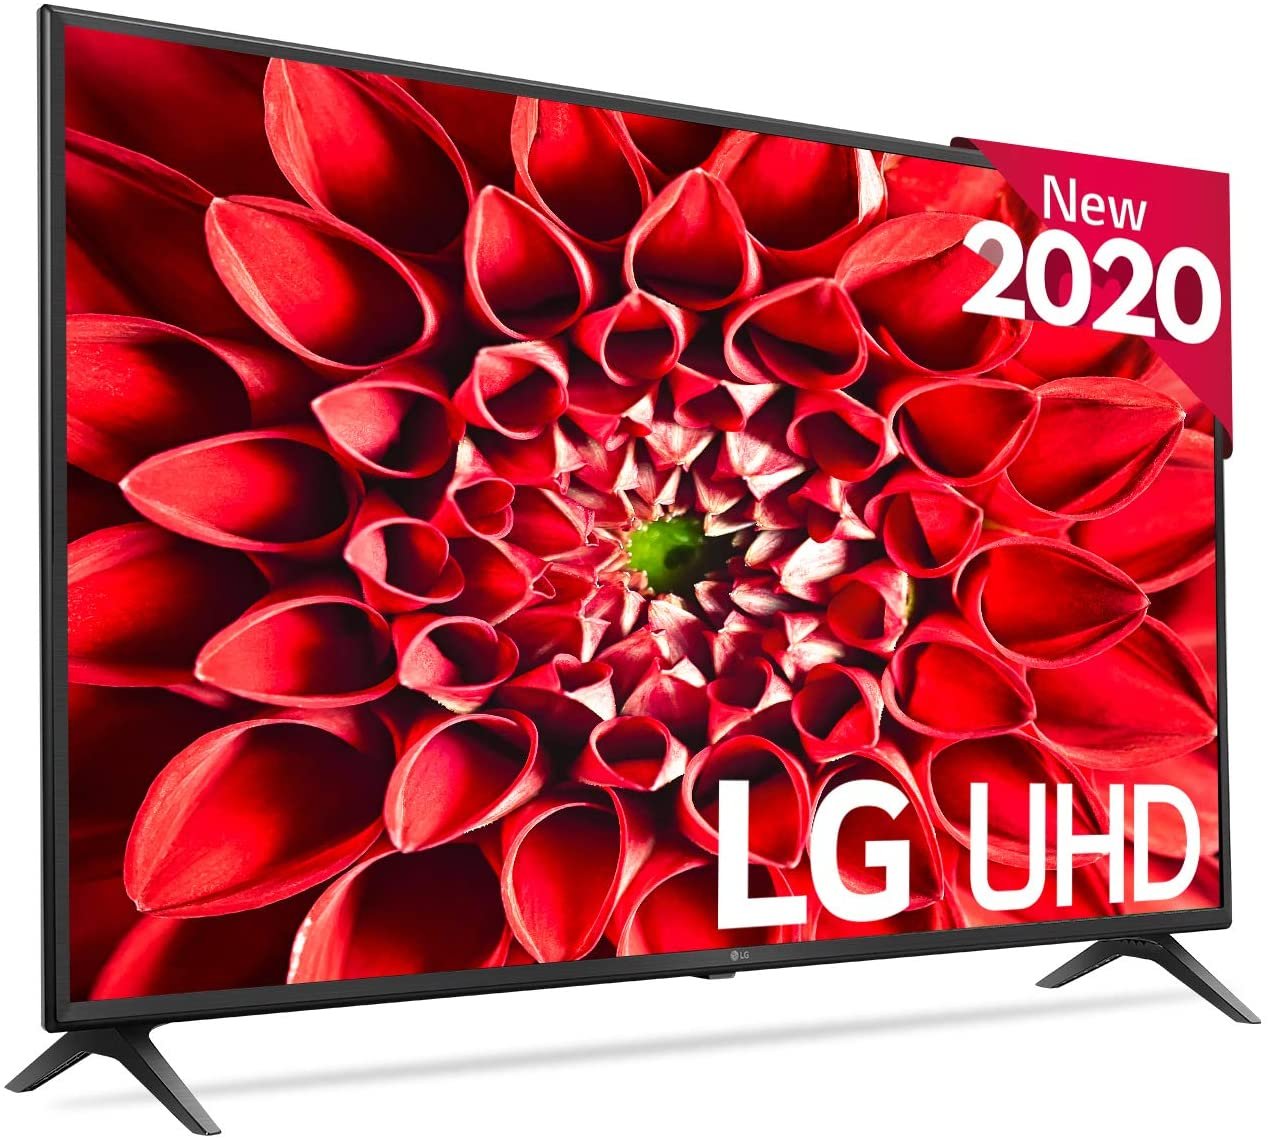 LG 43UN7100 Smart TV 4K UHD 108 cm 43 PULG mejor televisor